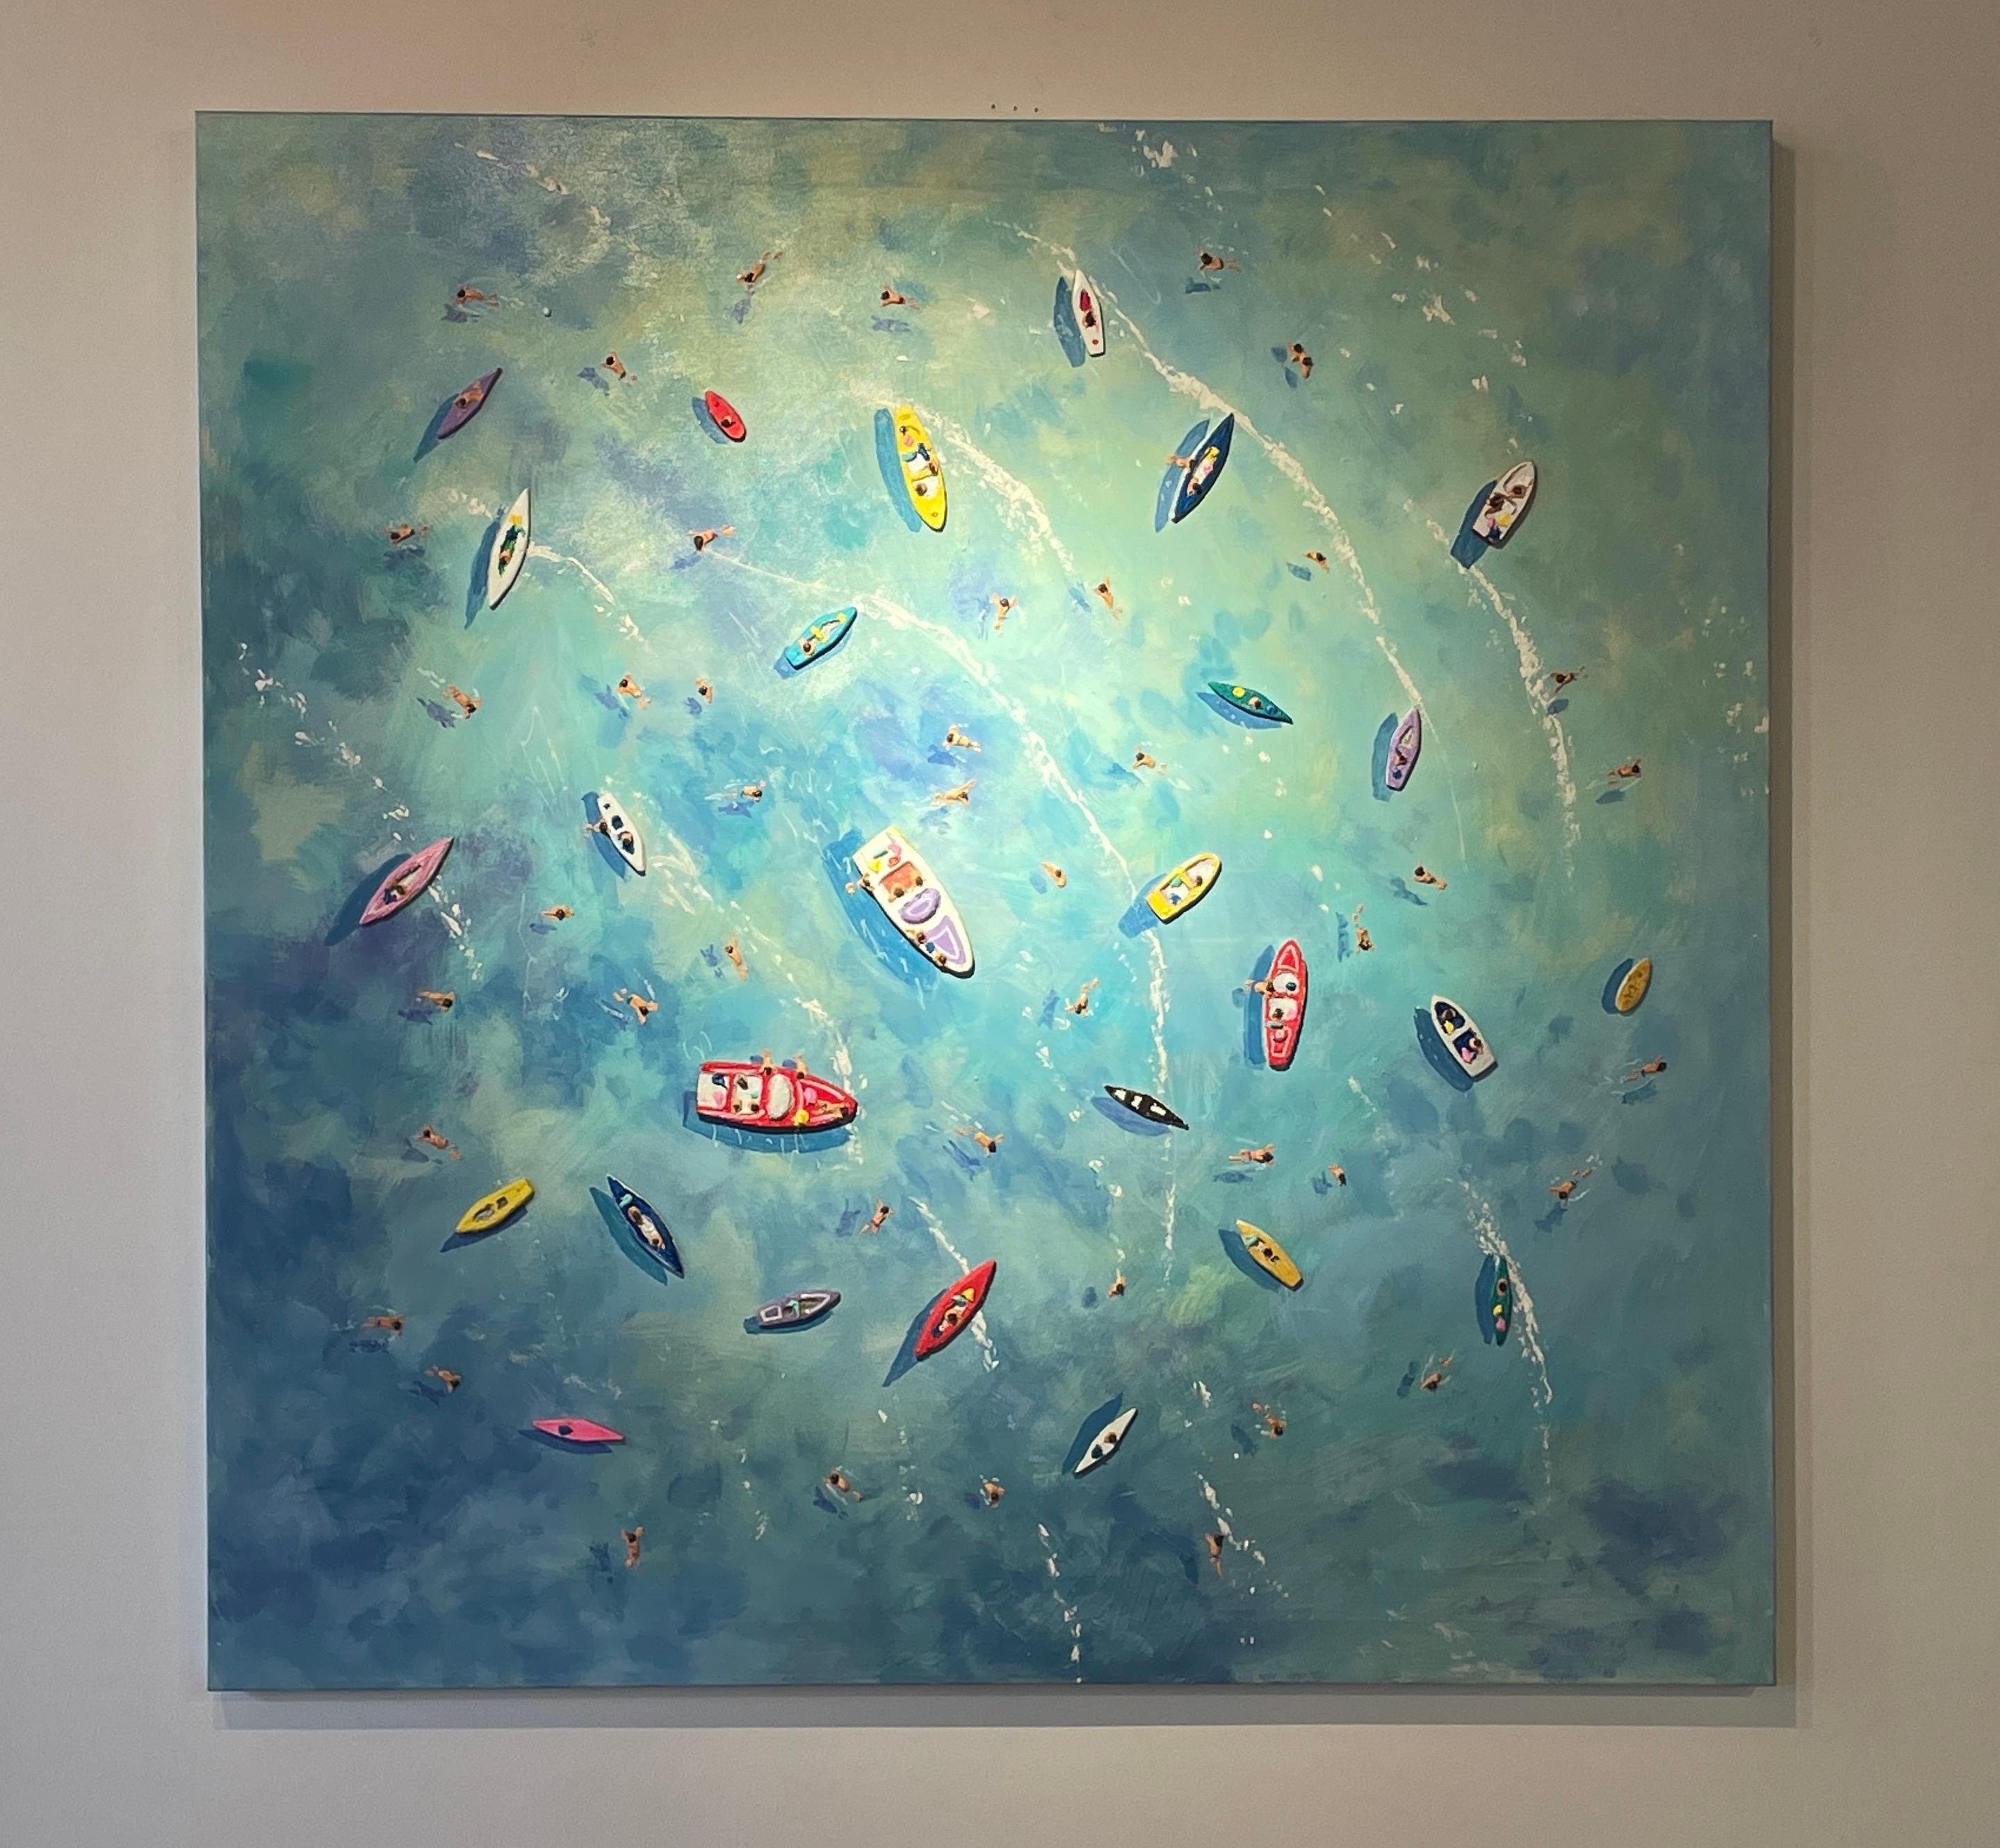 Peinture contemporaine colorée en 3D « Big Blue » représentant la mer, les bateaux et les personnages - Painting de Max Todd